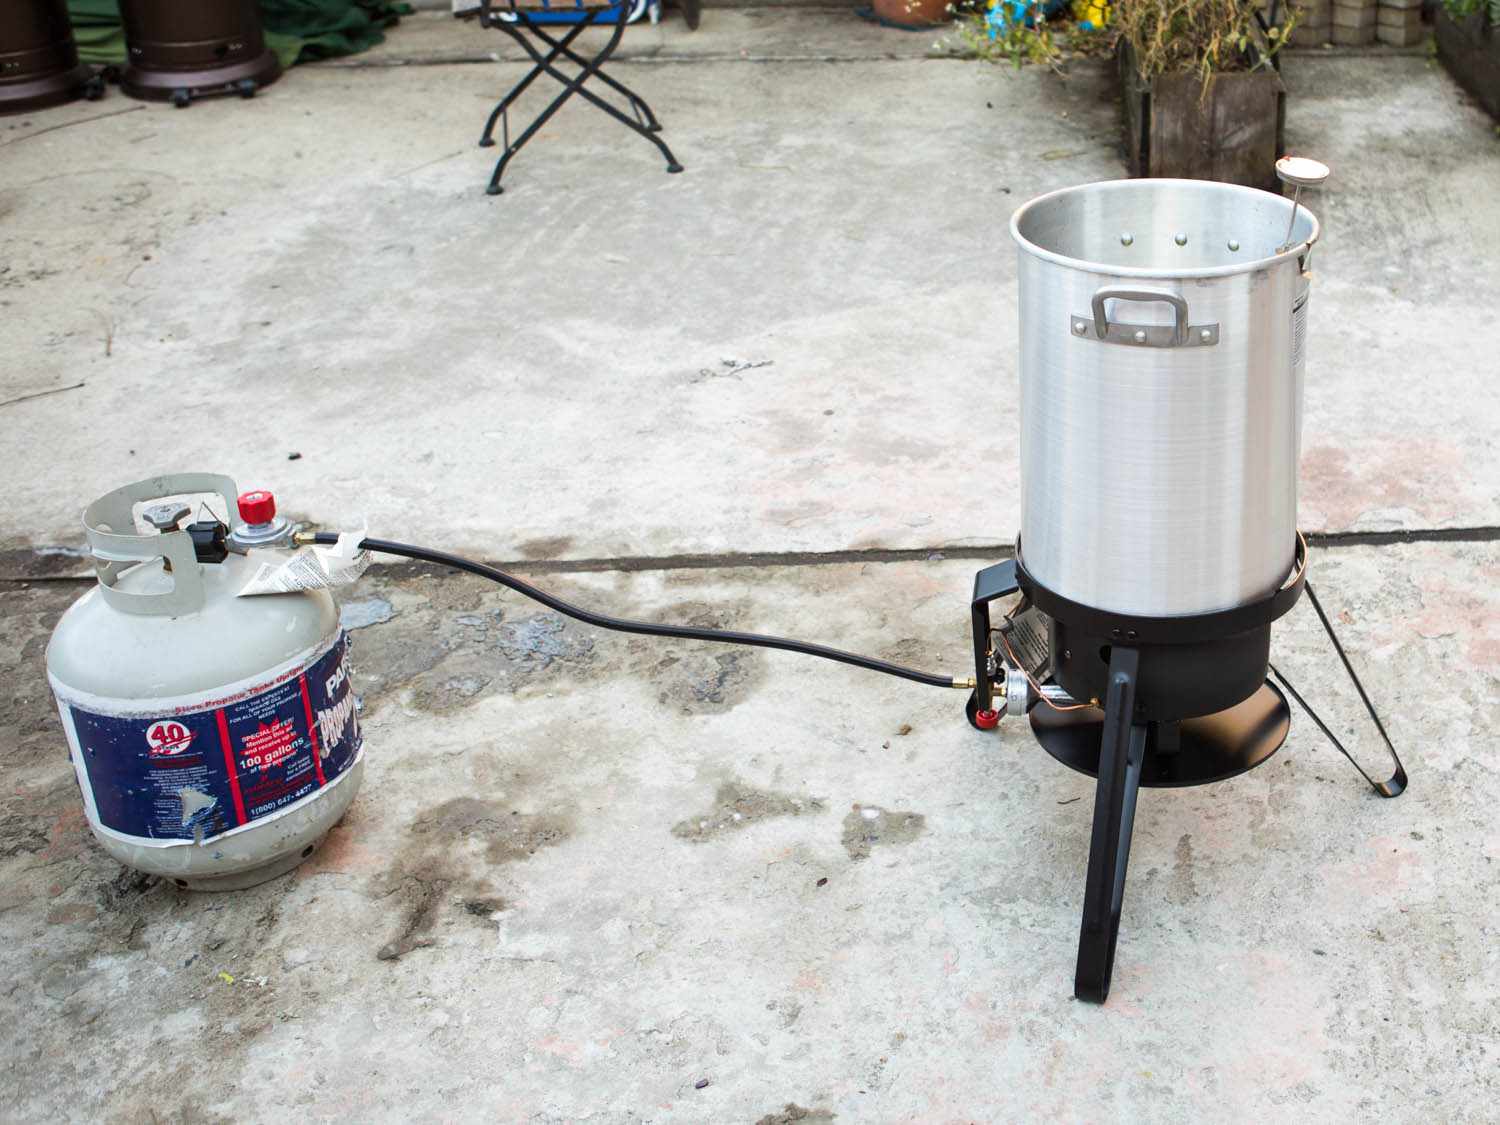 示范设置丙烷气罐与火鸡油炸锅之间的安全距离